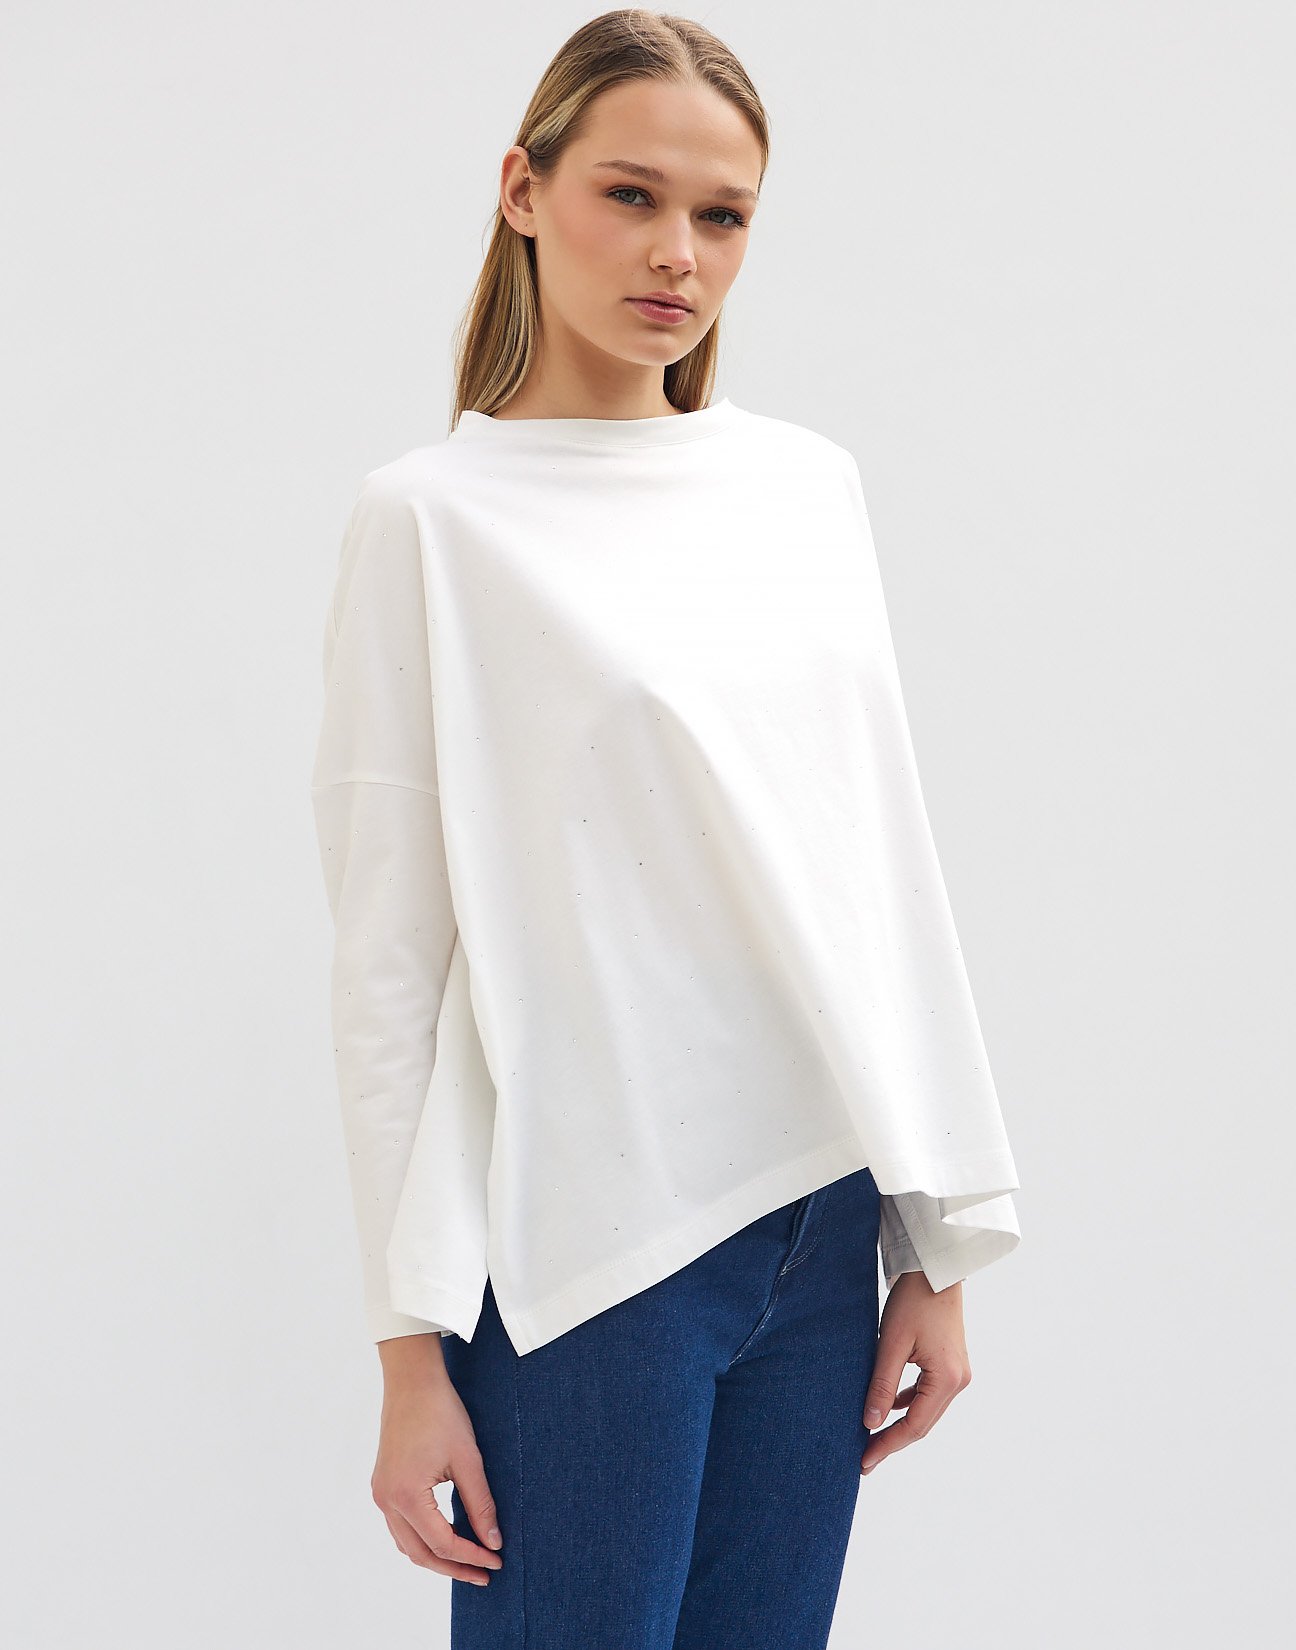 Oversized  blouse with rhinestone